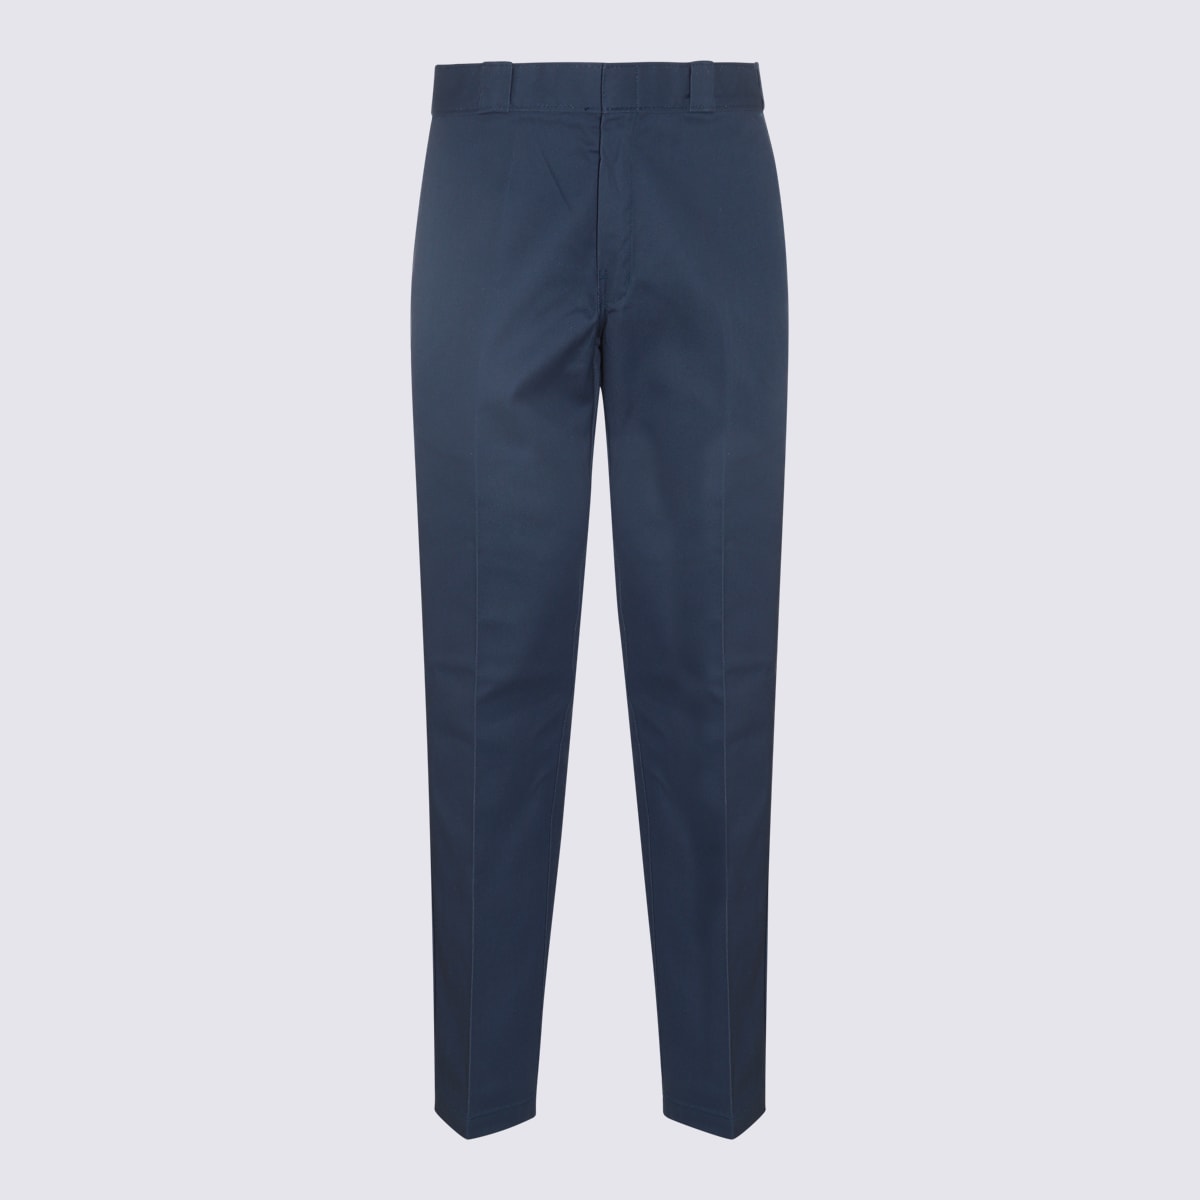 Shop Dickies Air Force Blue Cotton Blend Pants